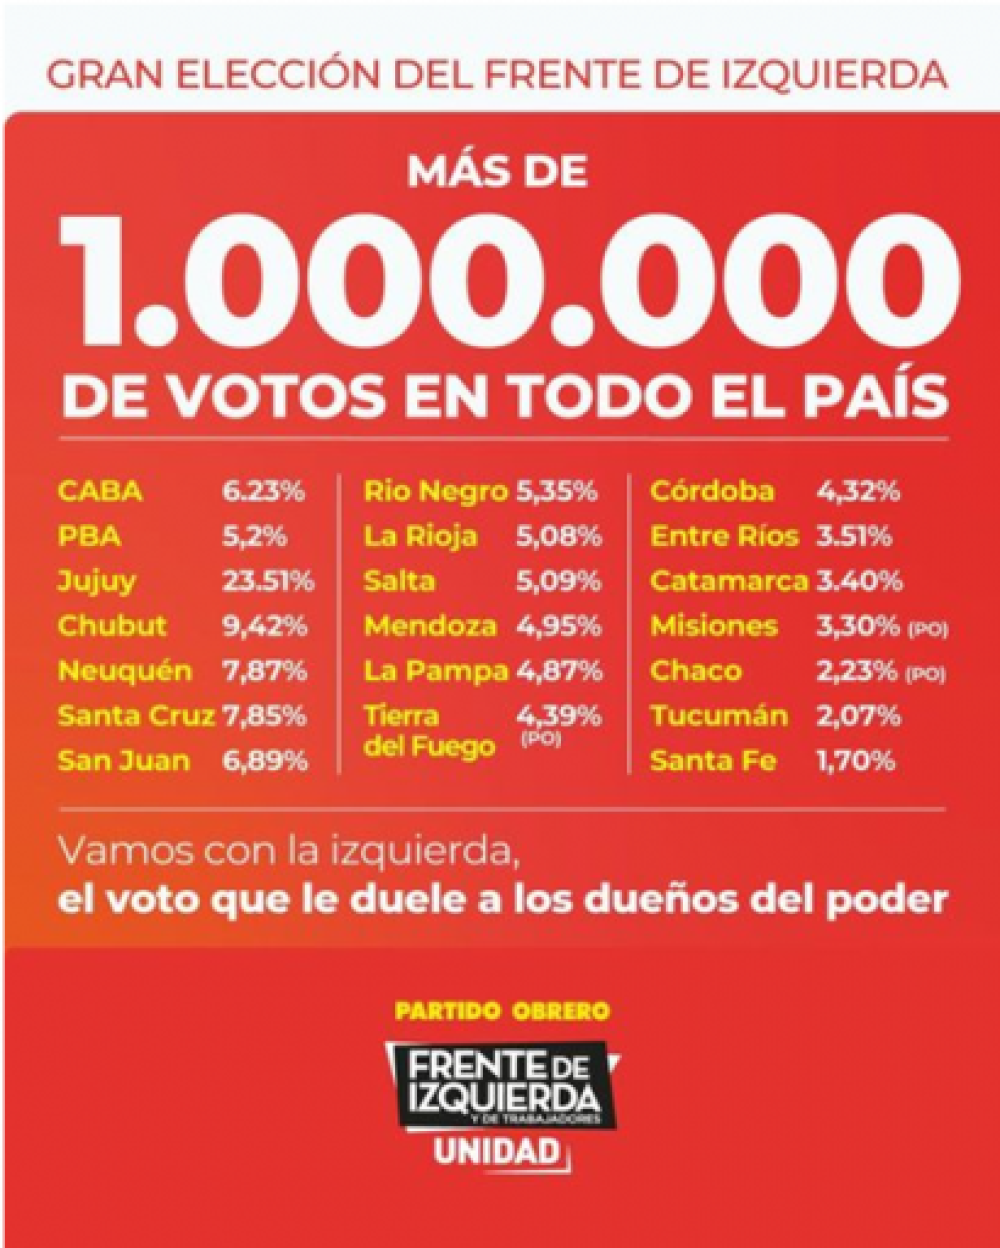 Rubén Allende y el Frente de Izquierda nacional agradecen el millón de votos en las PASO
